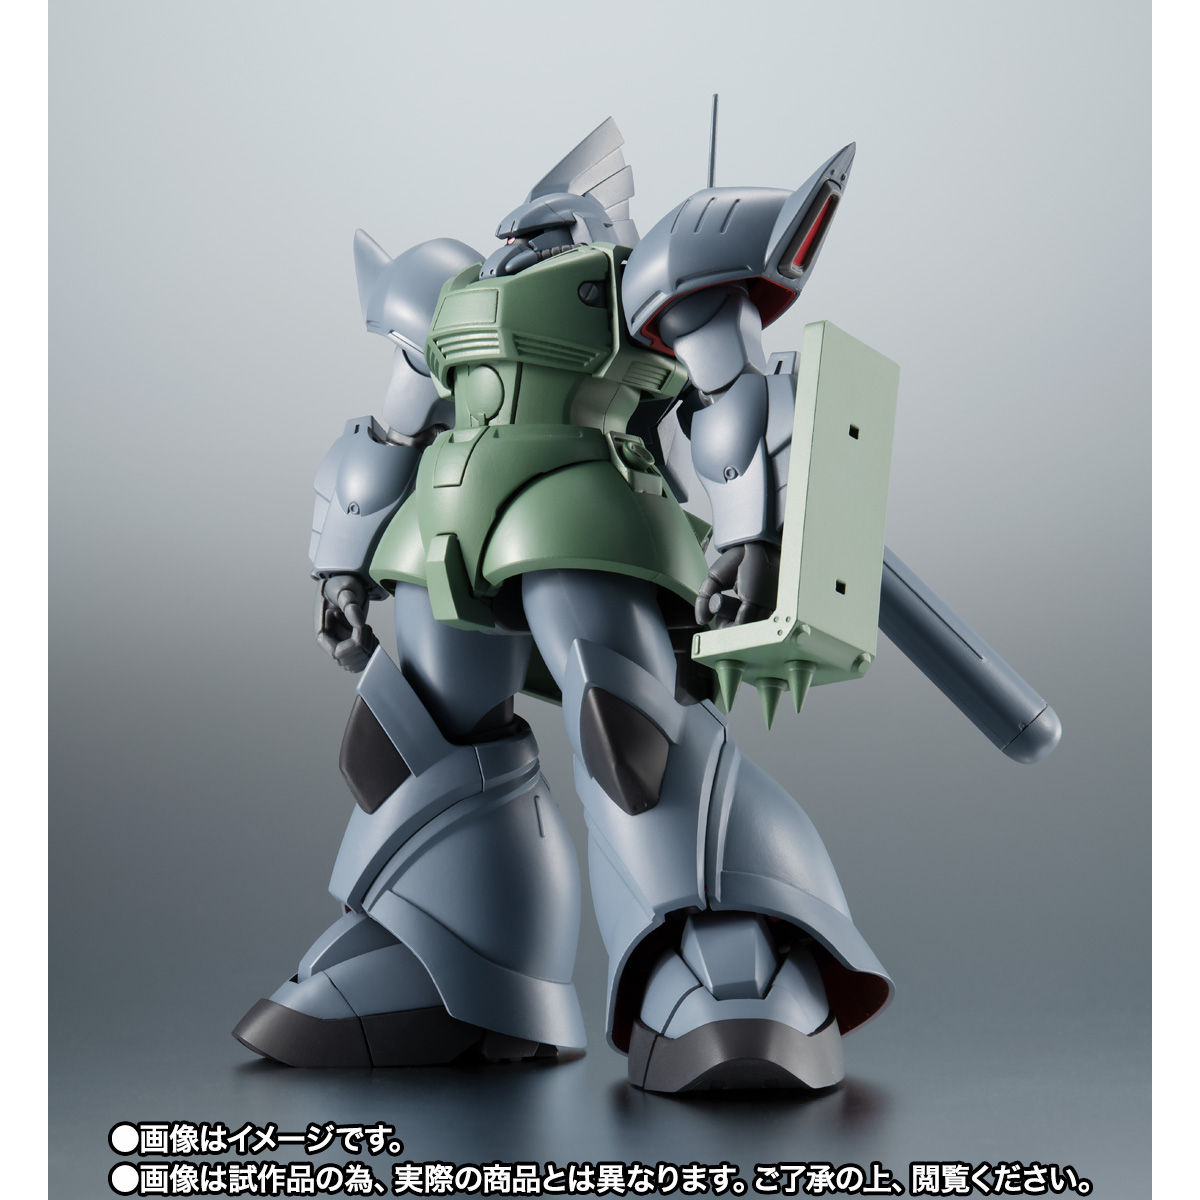 【限定販売】ROBOT魂〈SIDE MS〉『MS-14F ゲルググM ver. A.N.I.M.E.』ガンダム0083 可動フィギュア-002